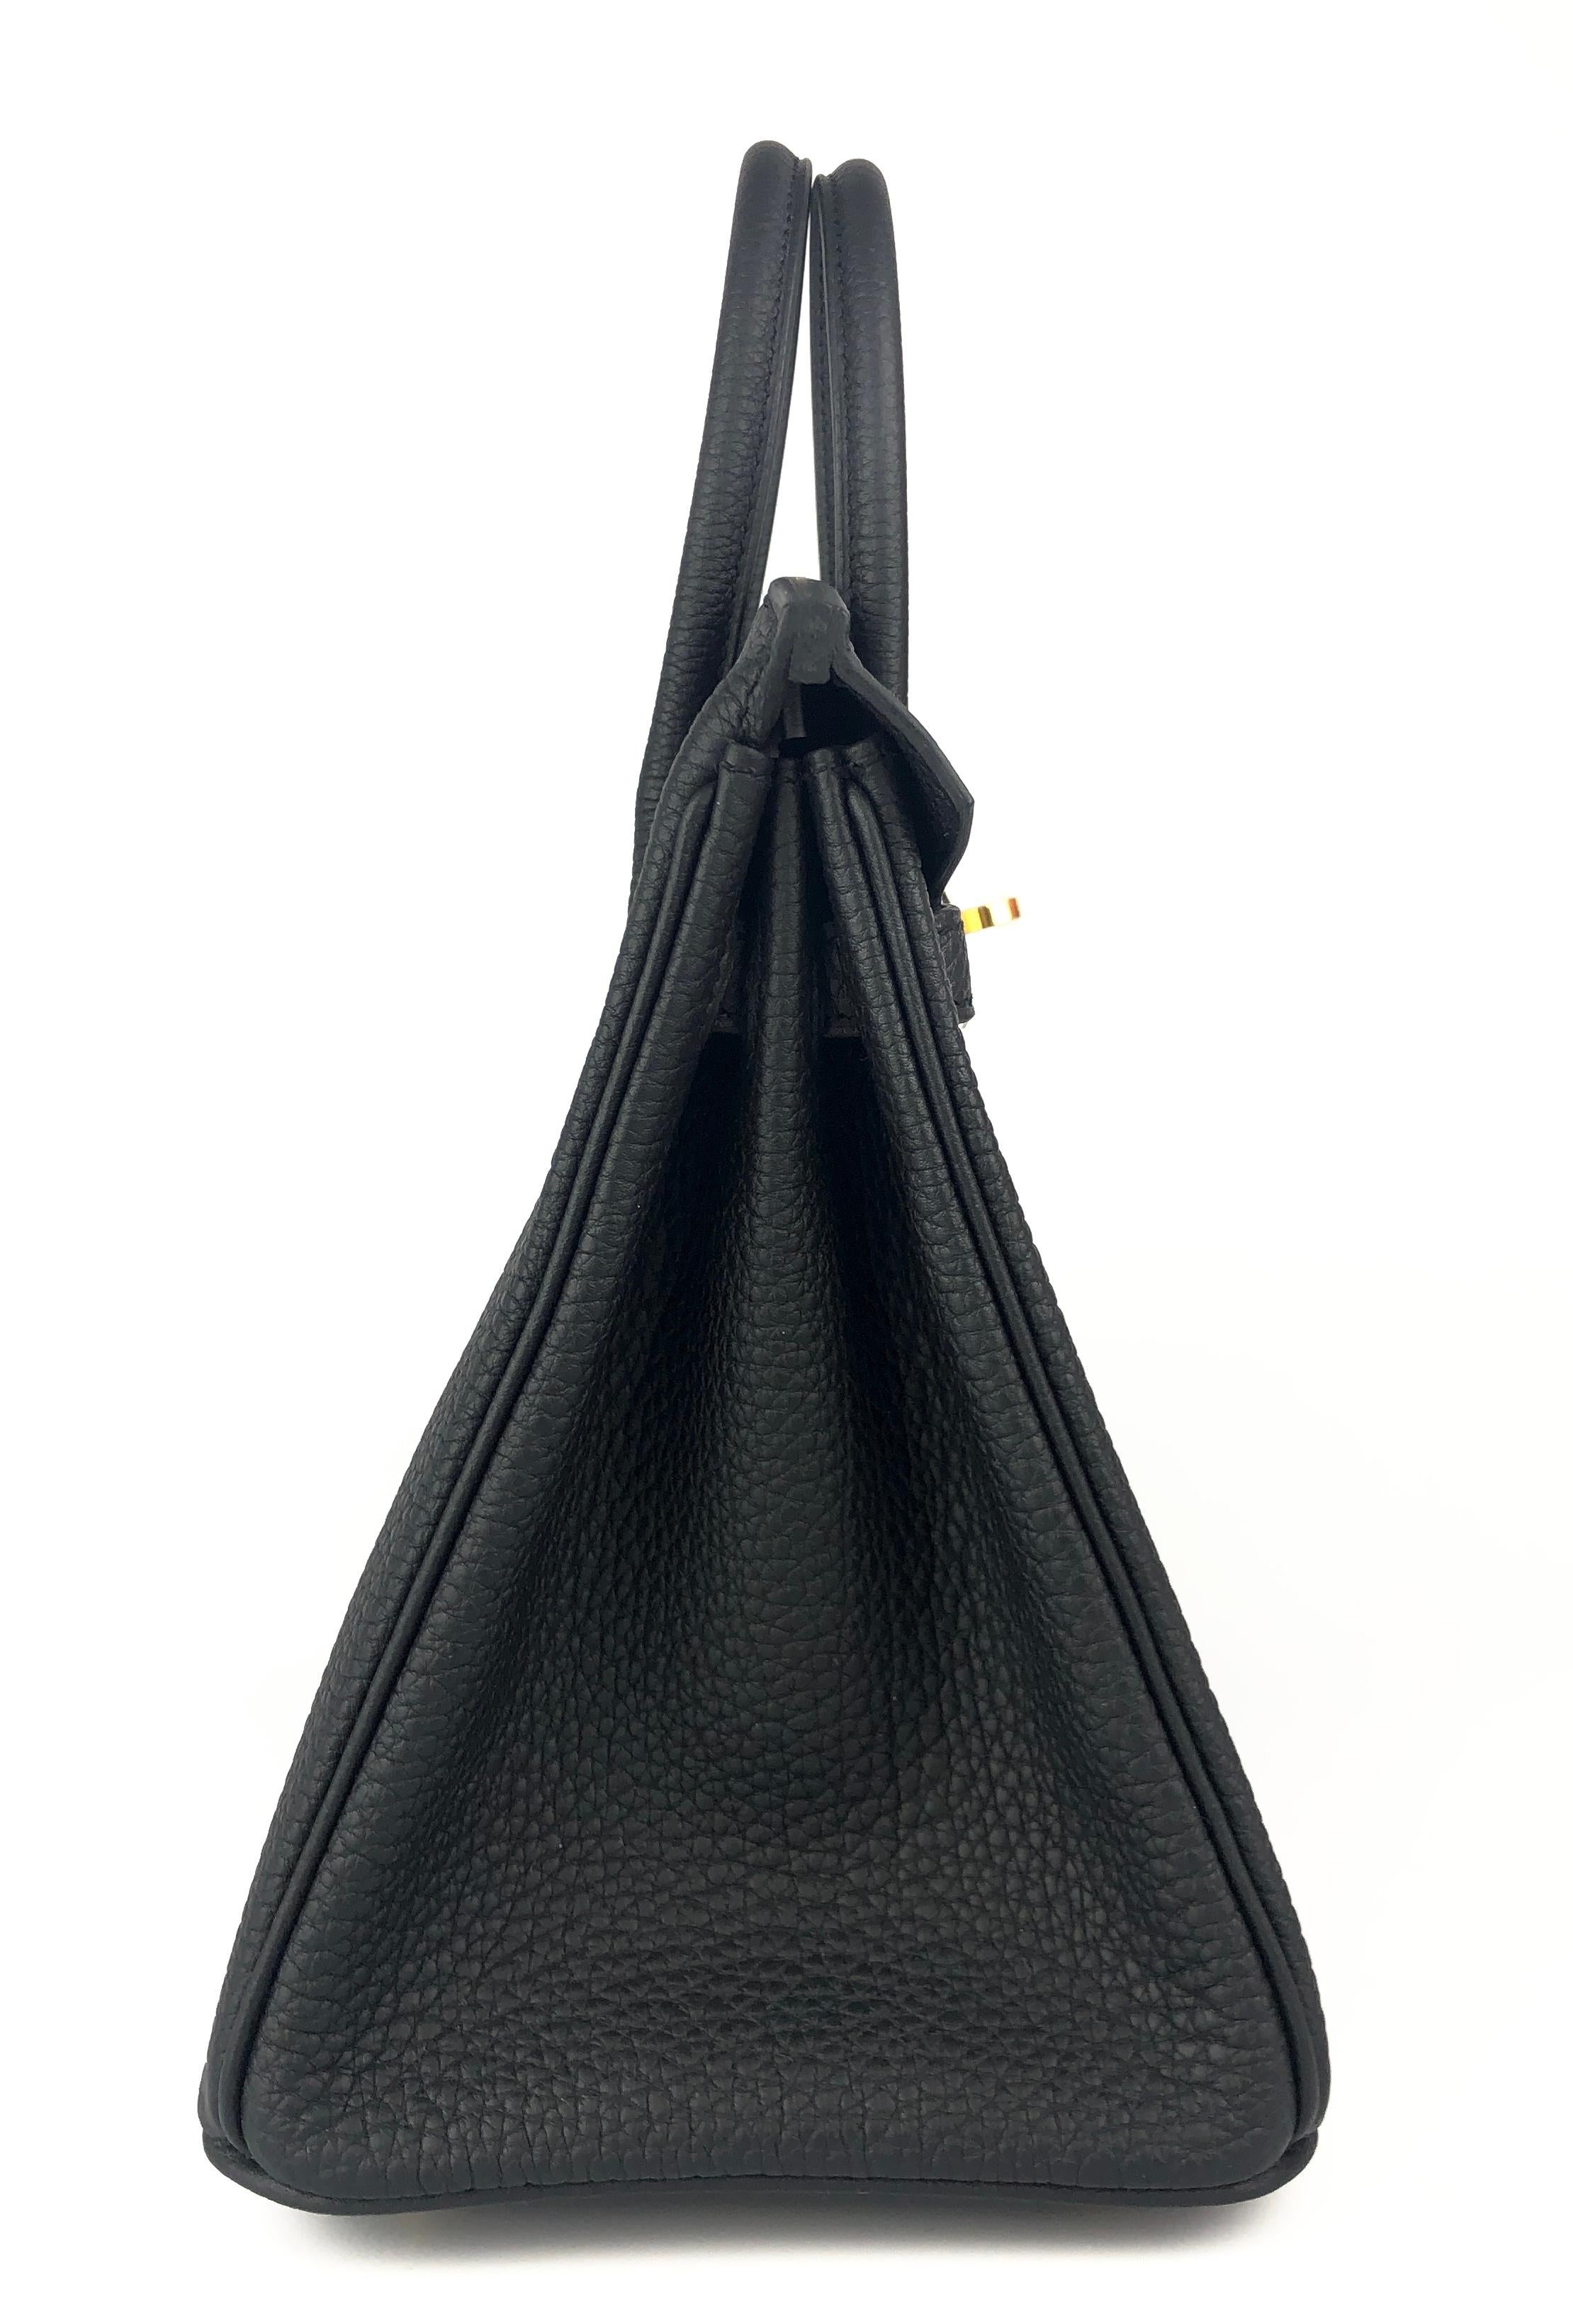 Hermes Birkin 25 Black Noir Togo Leather Handbag Gold Hardware 2022 4